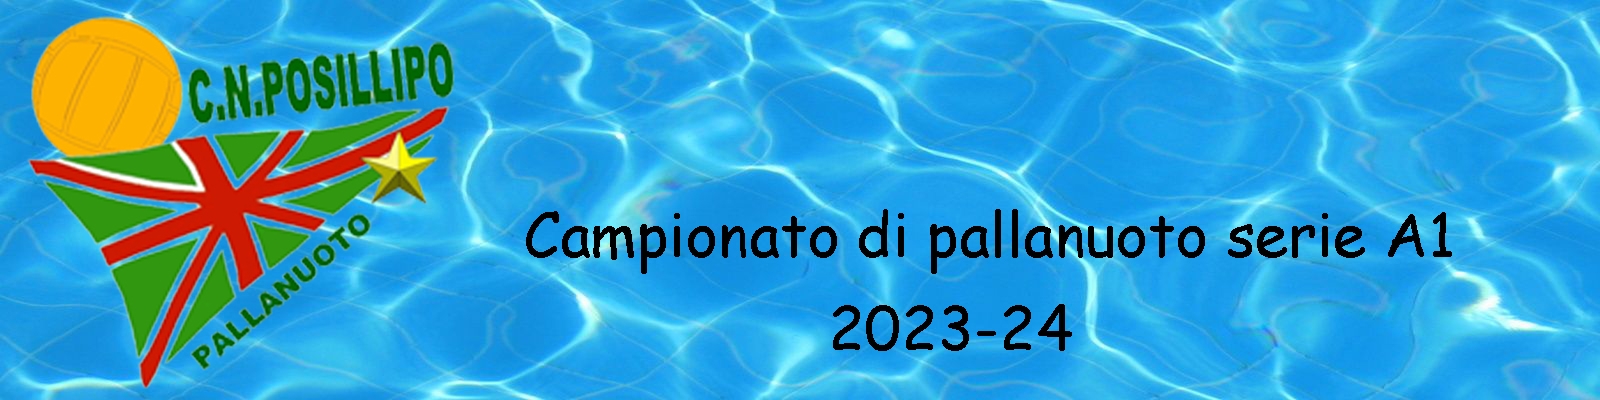 Posillipo 2023-24